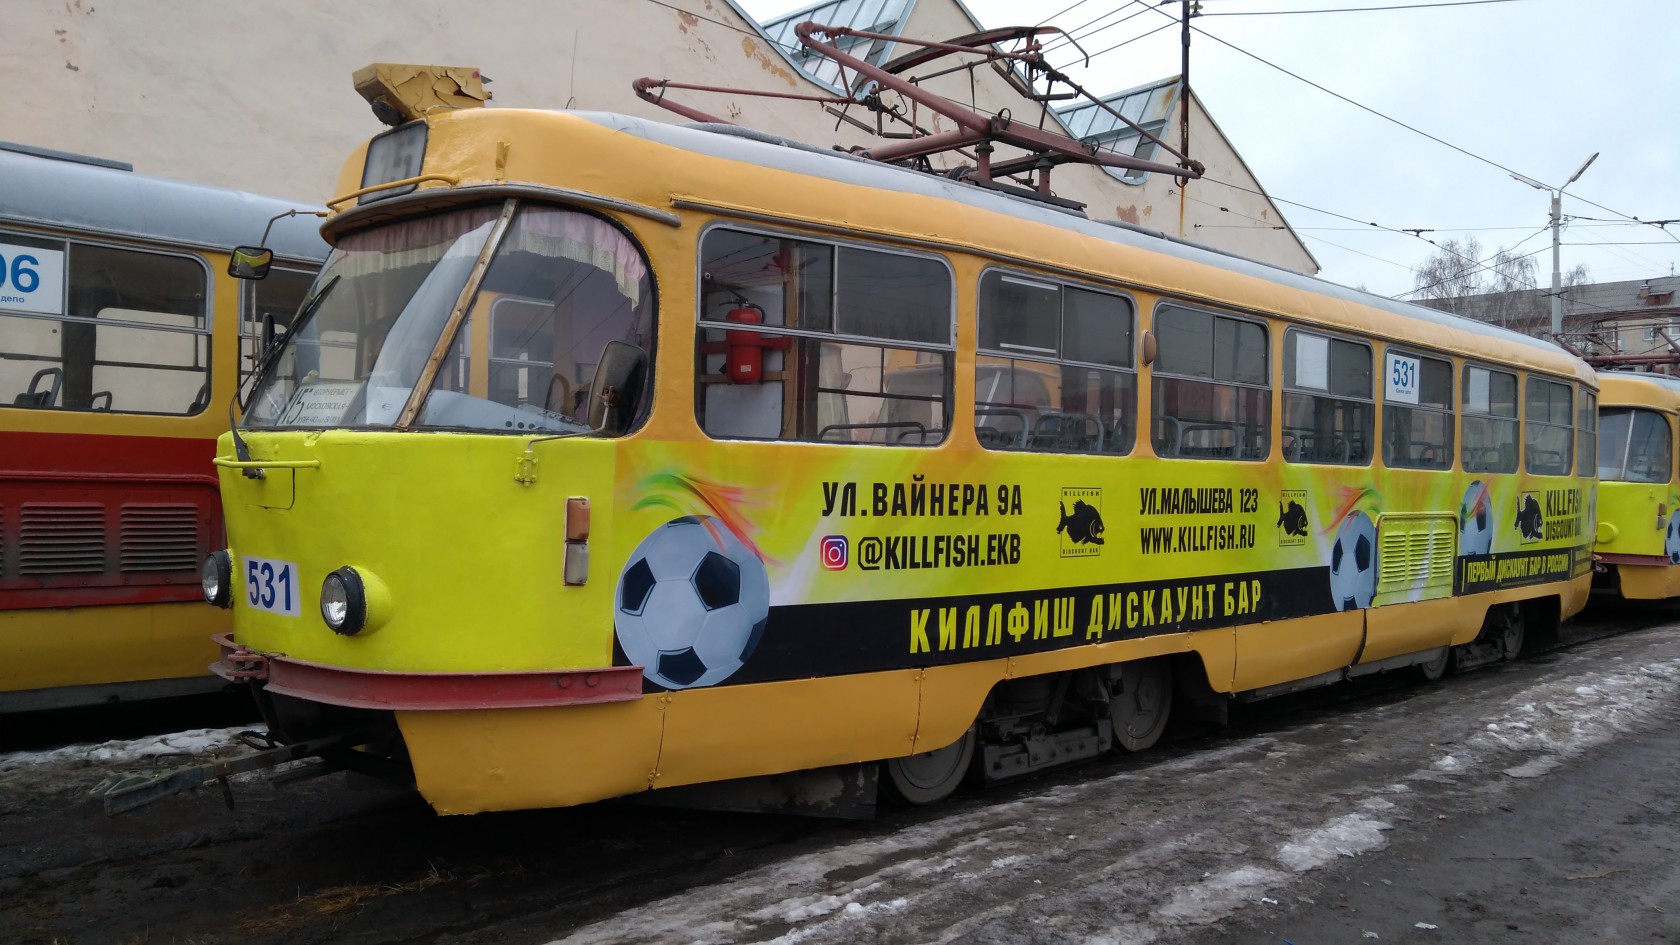 Размещение рекламы дискаунт бара KILL FISH на трамваях Екатеринбурга